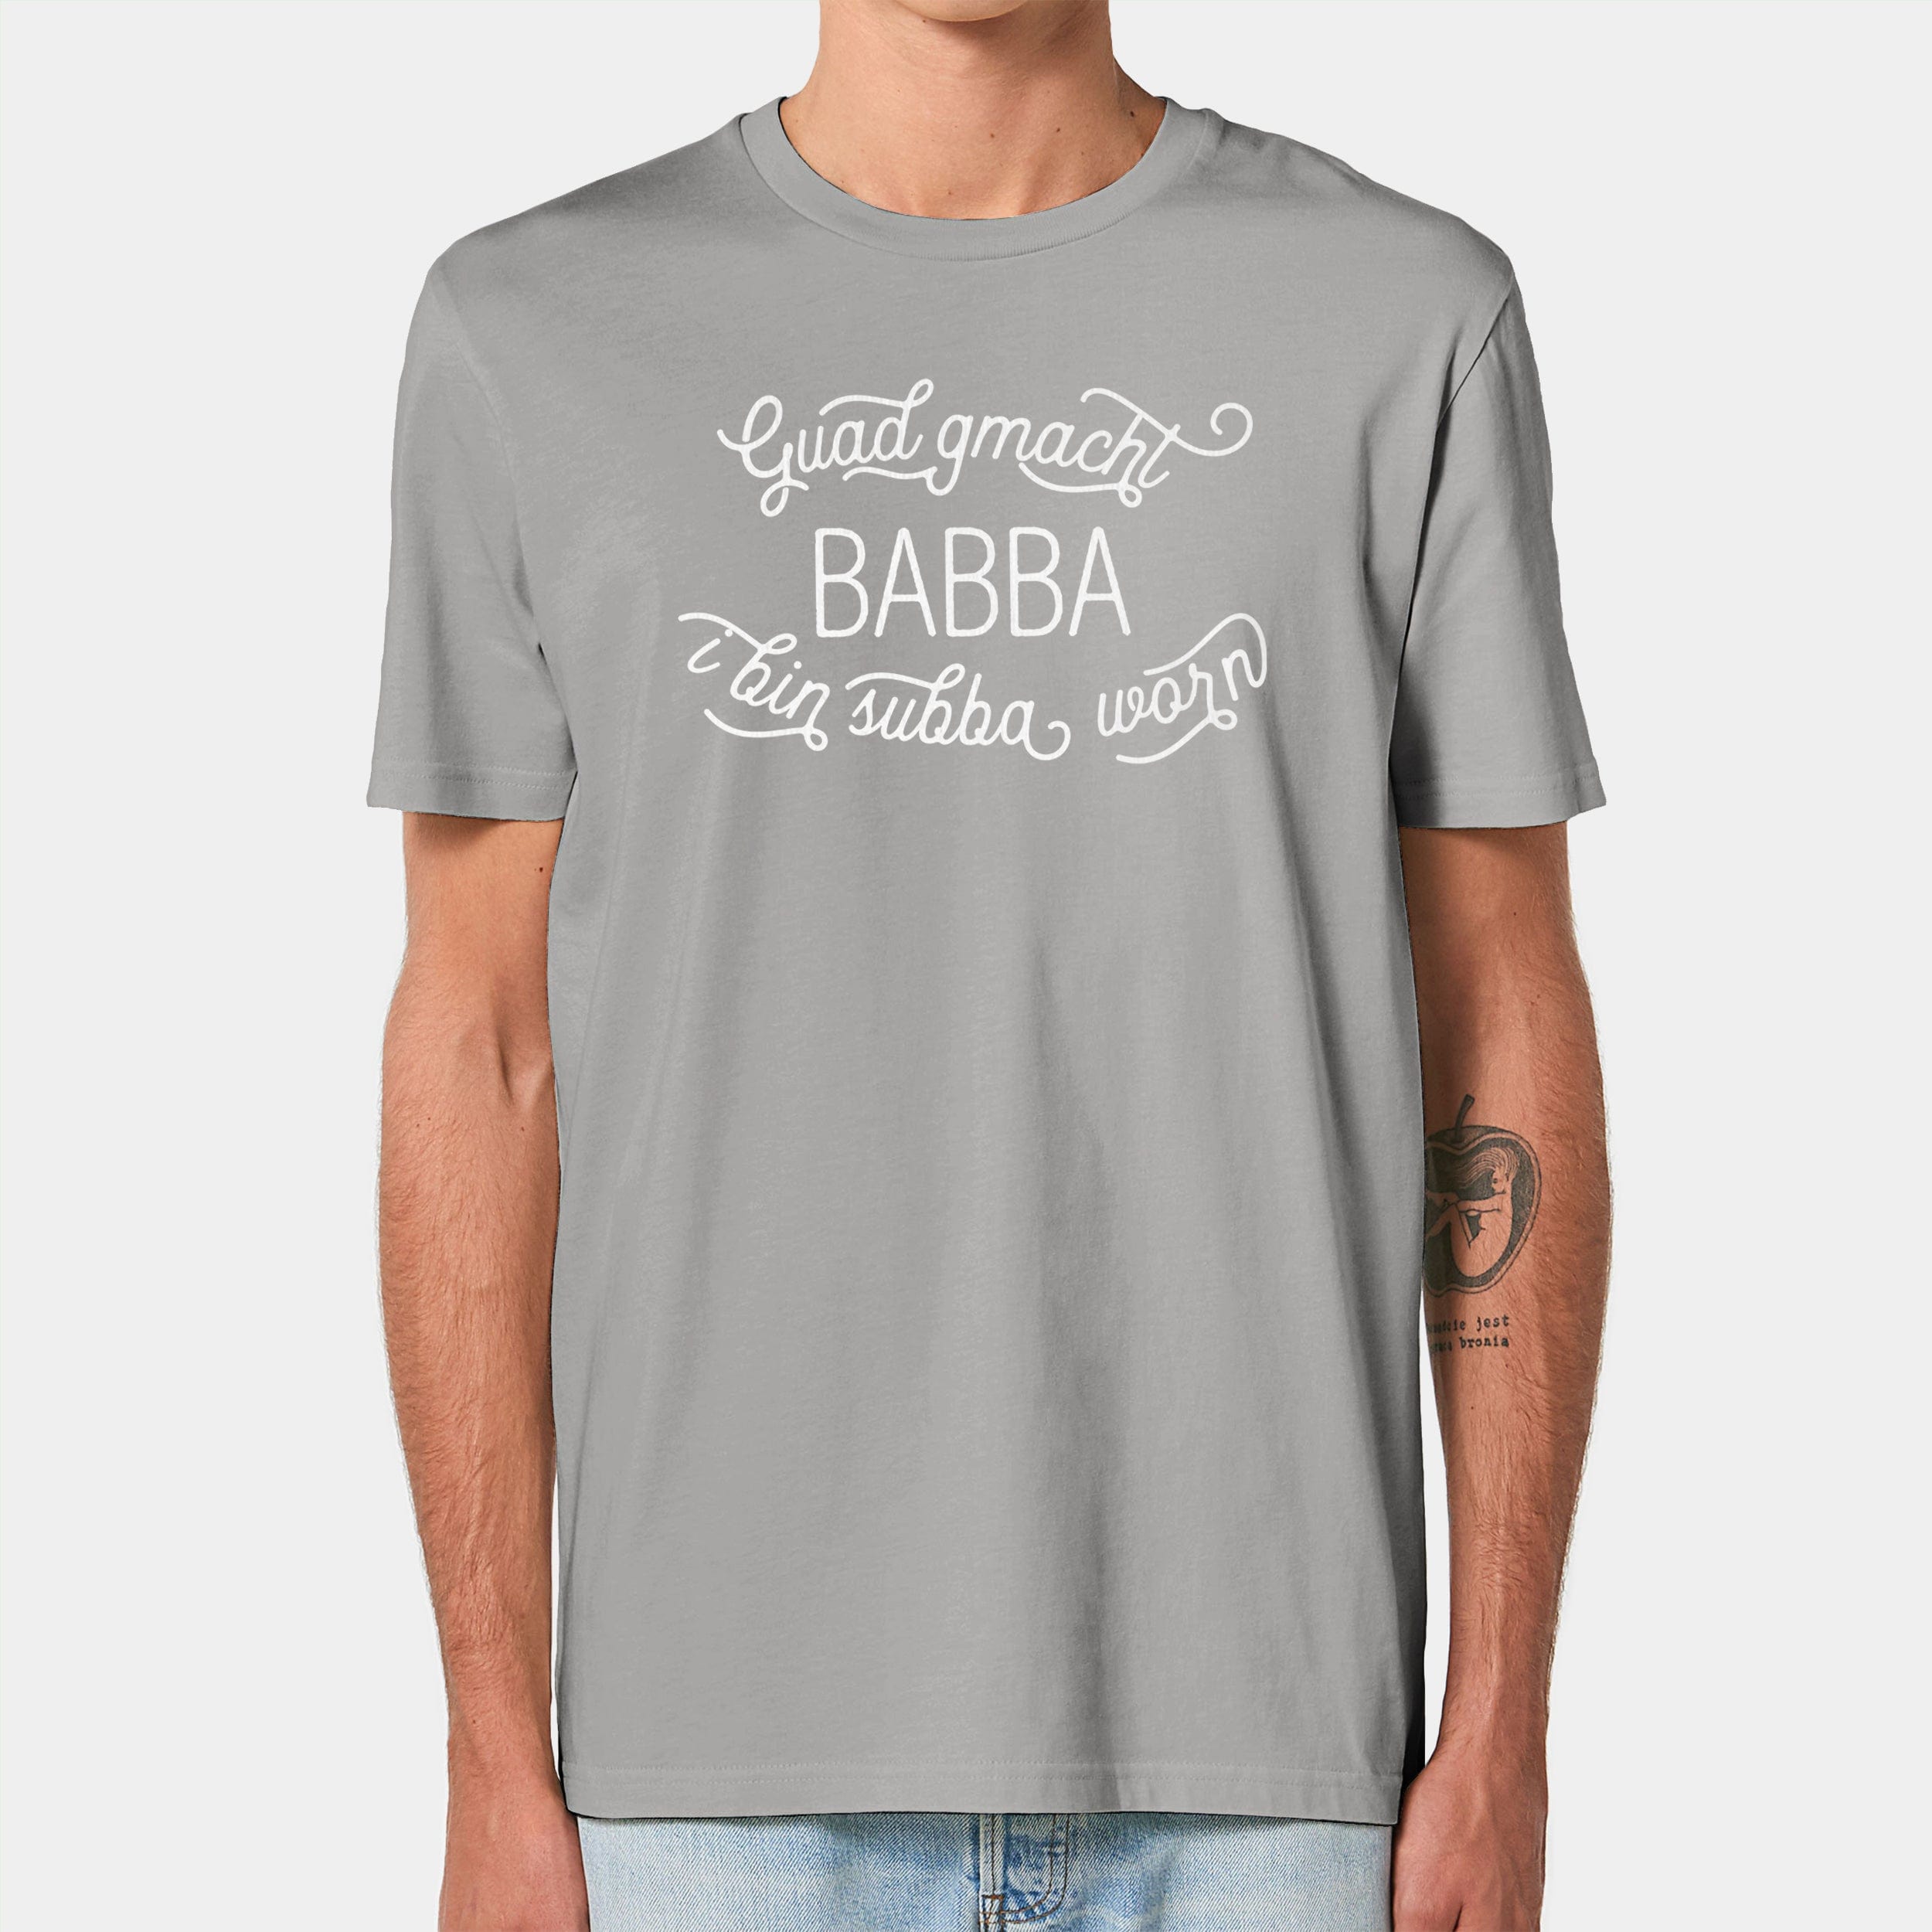 HEITER & LÄSSIG T-Shirt "Guad gmacht Babba" S / opal - aus nachhaltiger und fairer Produktion